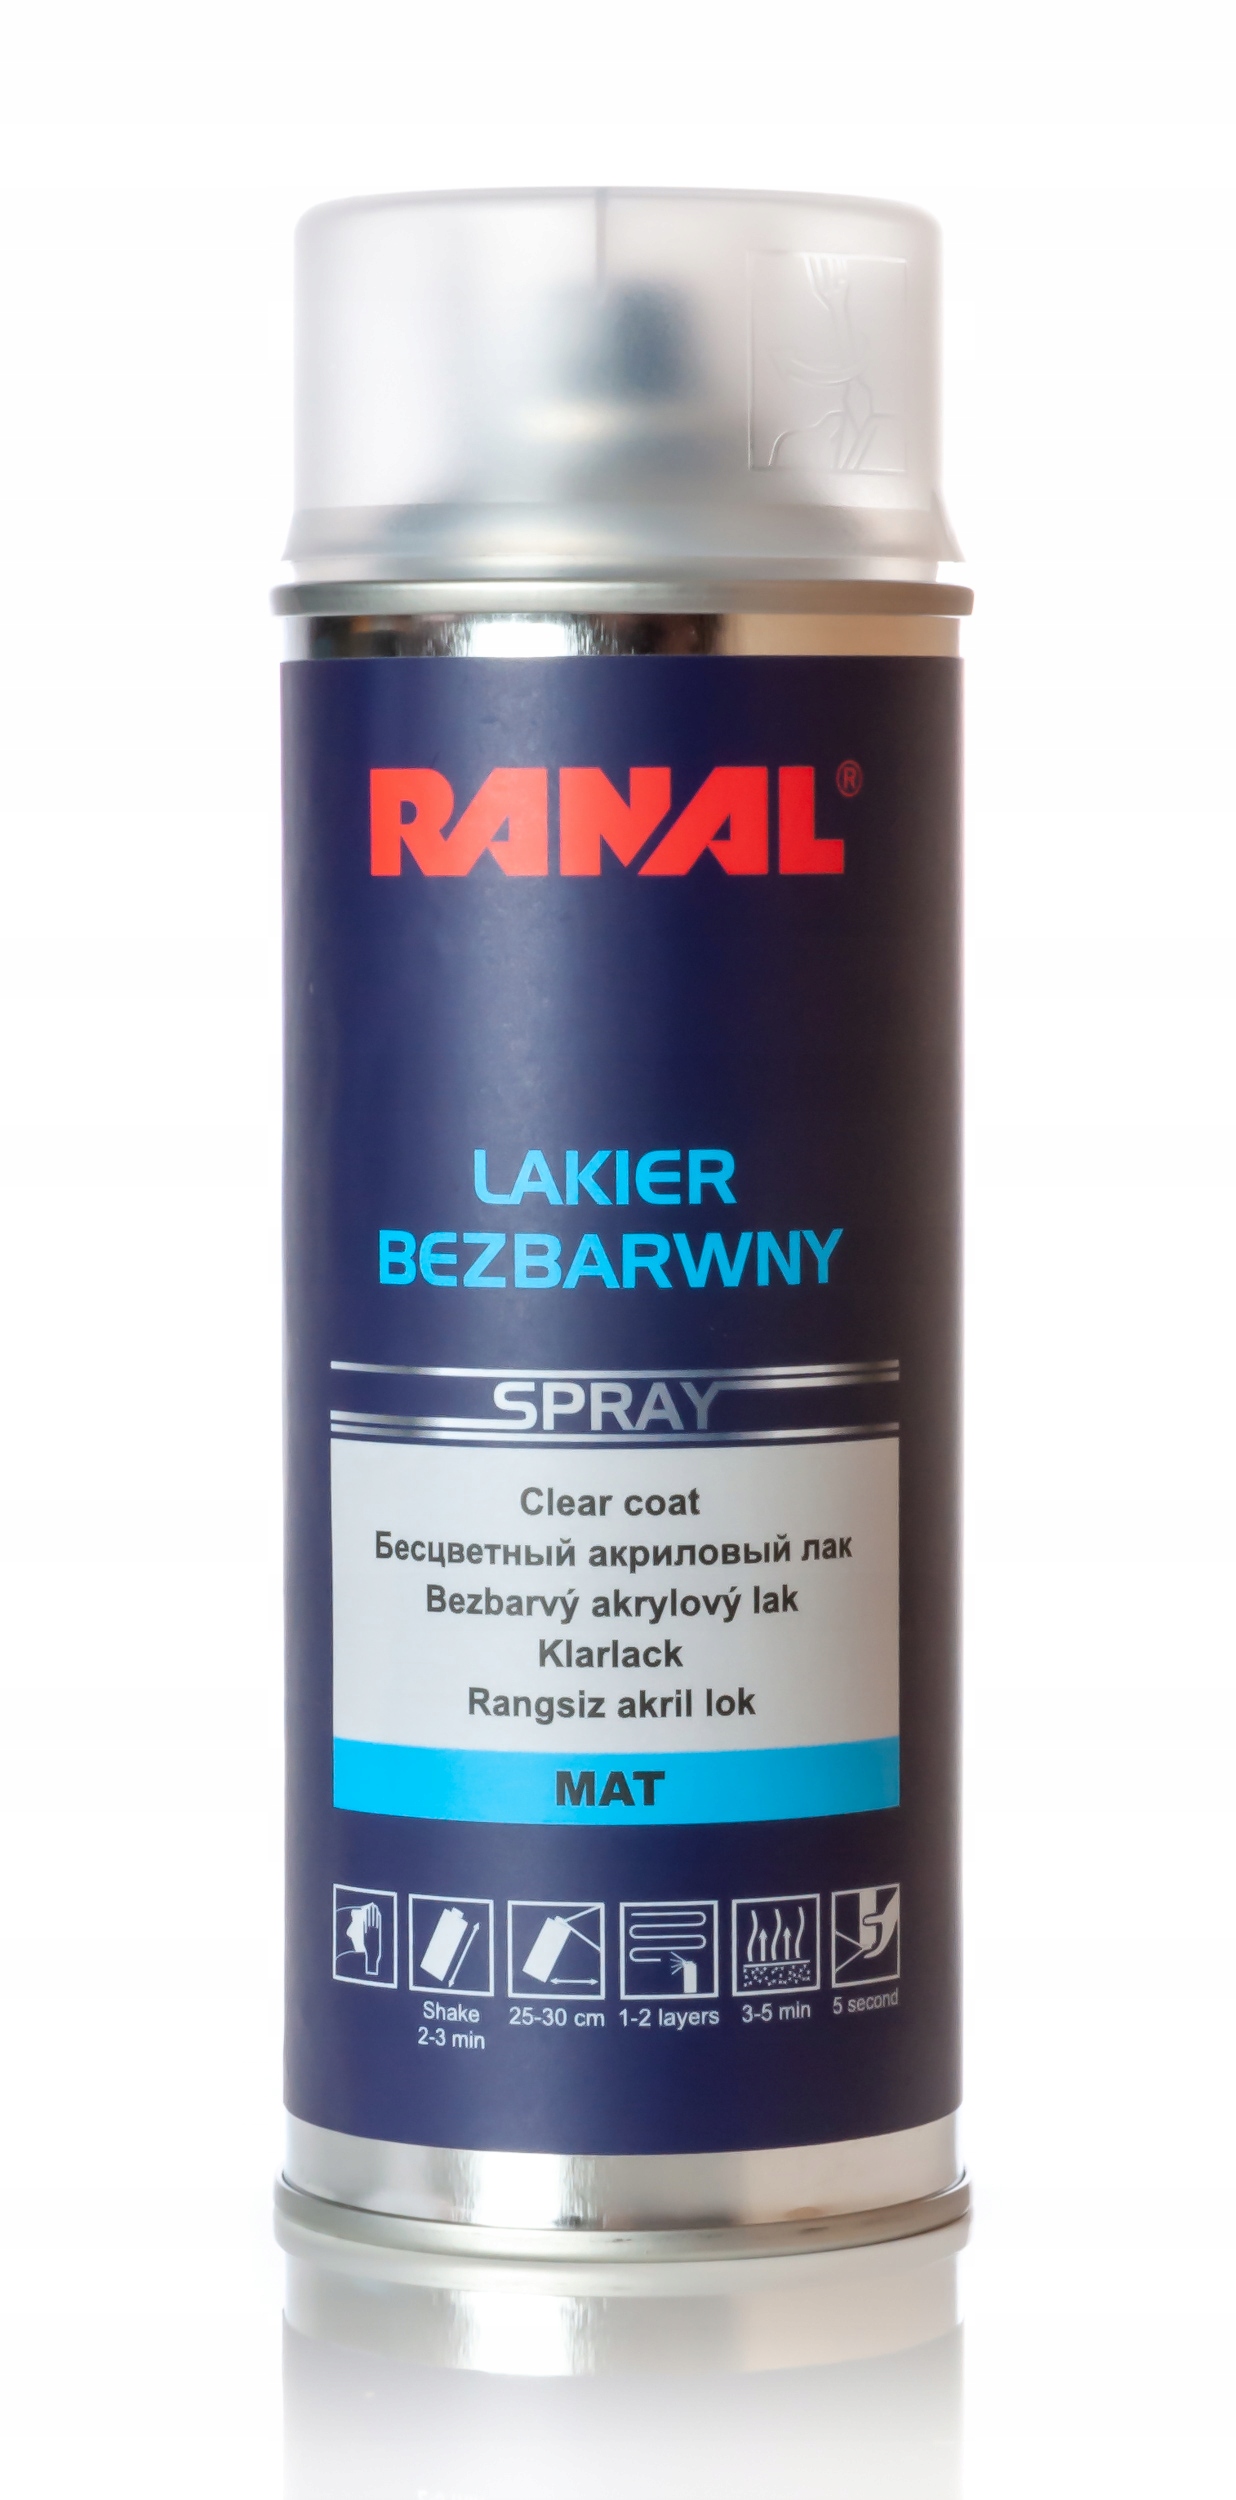 RANAL Lakier Bezbarwny Spray 400ml - MAT Numer katalogowy producenta 30106